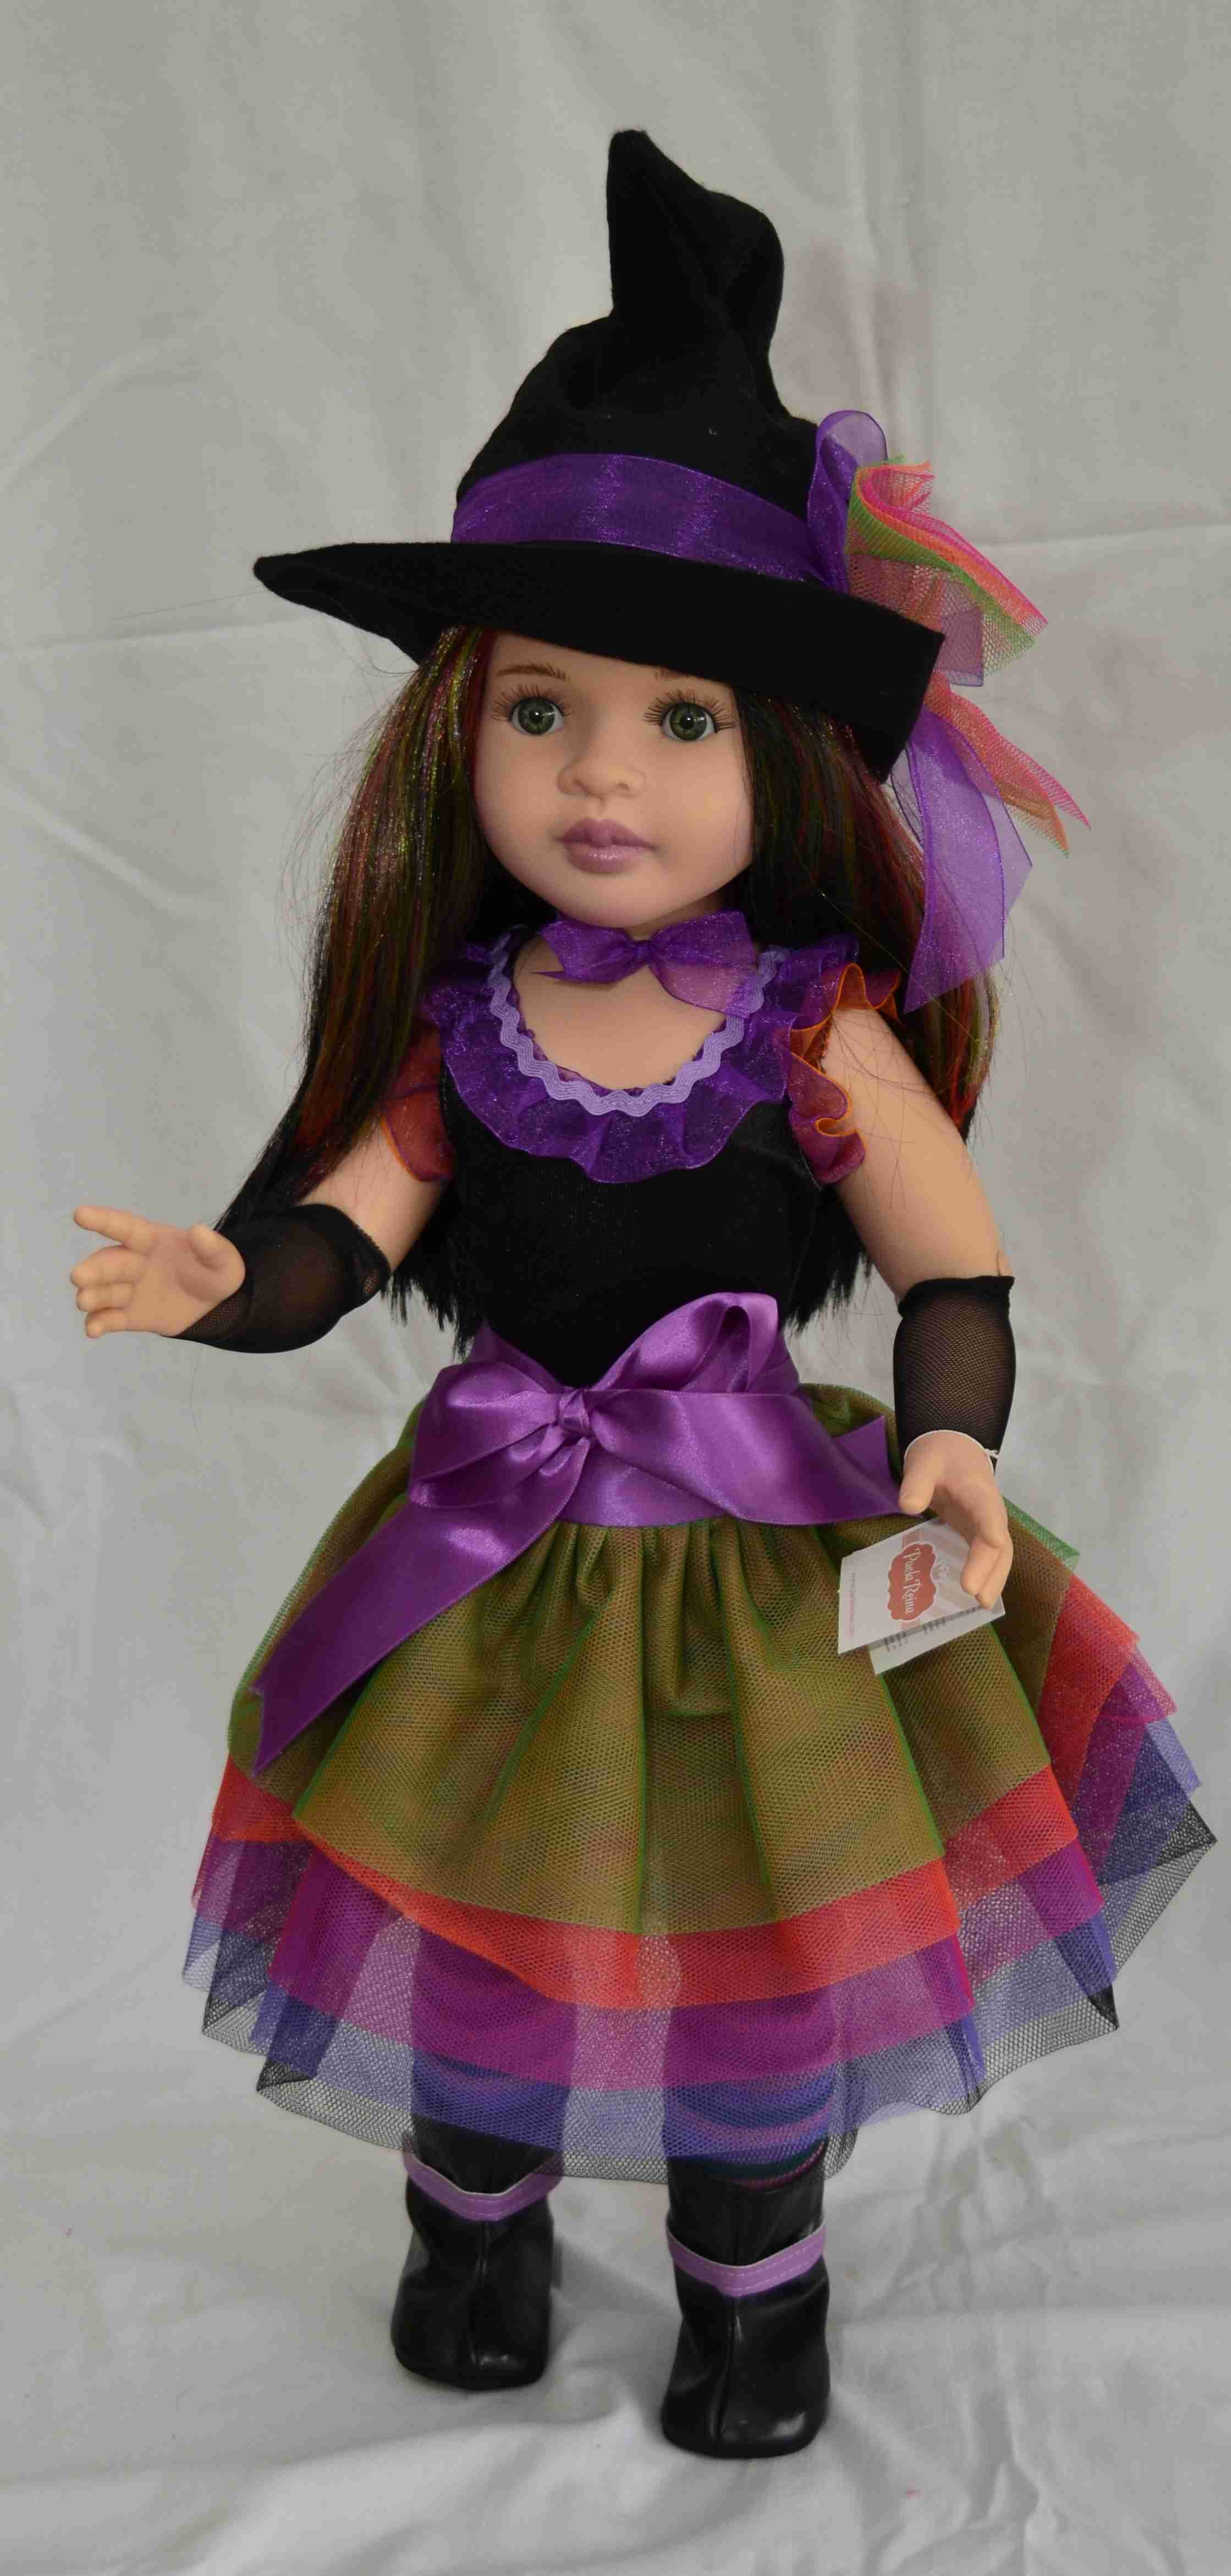 Realistická kloubová panenka Čarodějka od firmy Paola Reina ze Španělska 60 cm